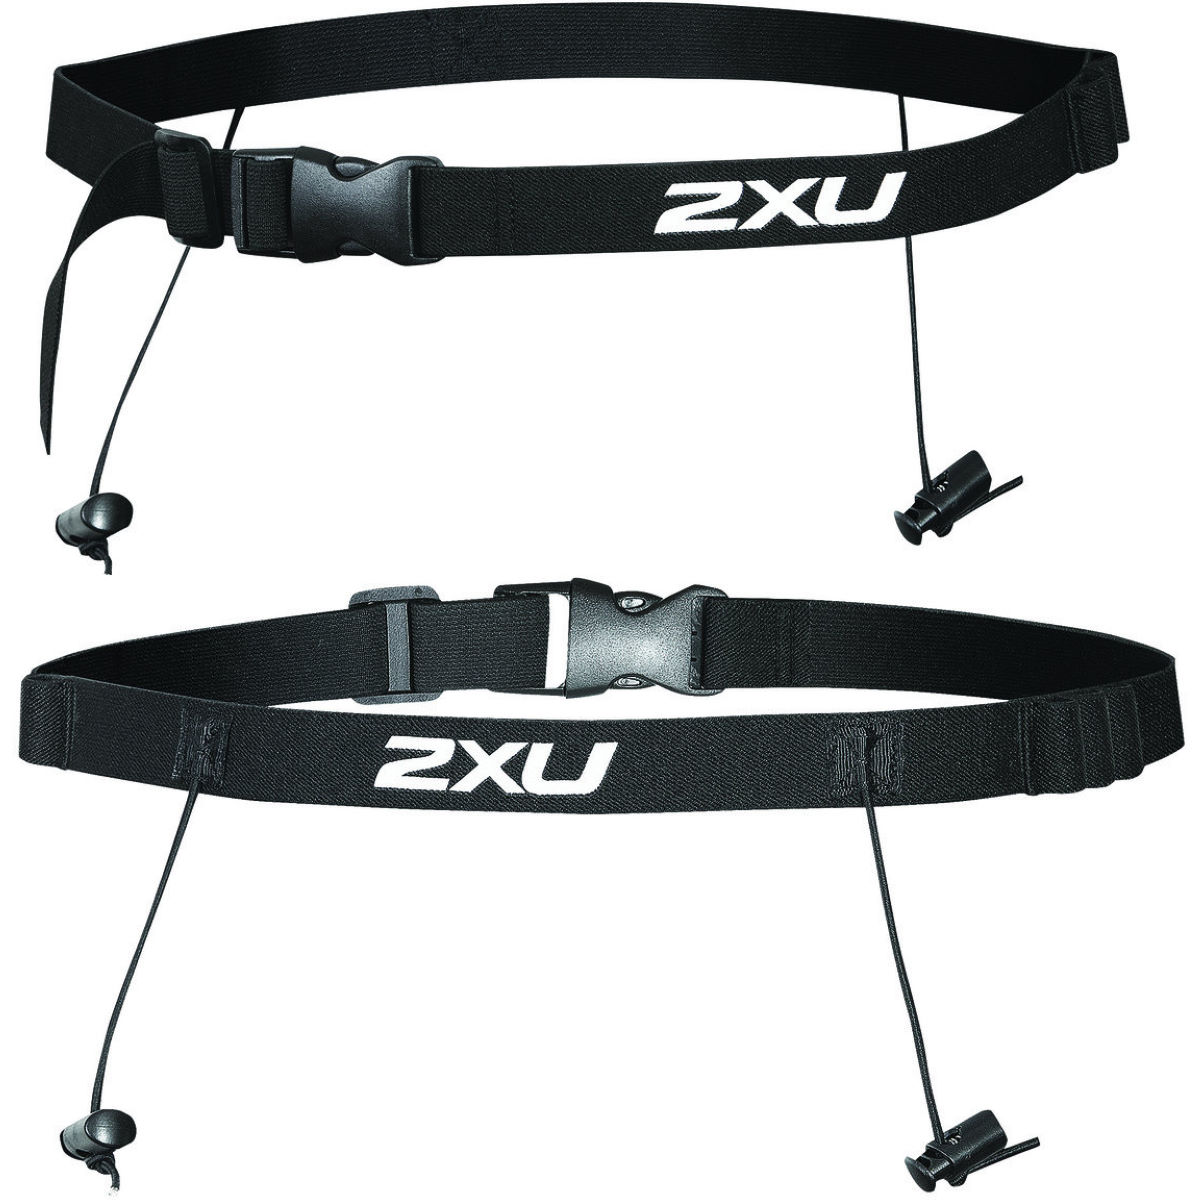 Cinturón portadorsal 2XU (con bucles) - Cinturones portadorsal